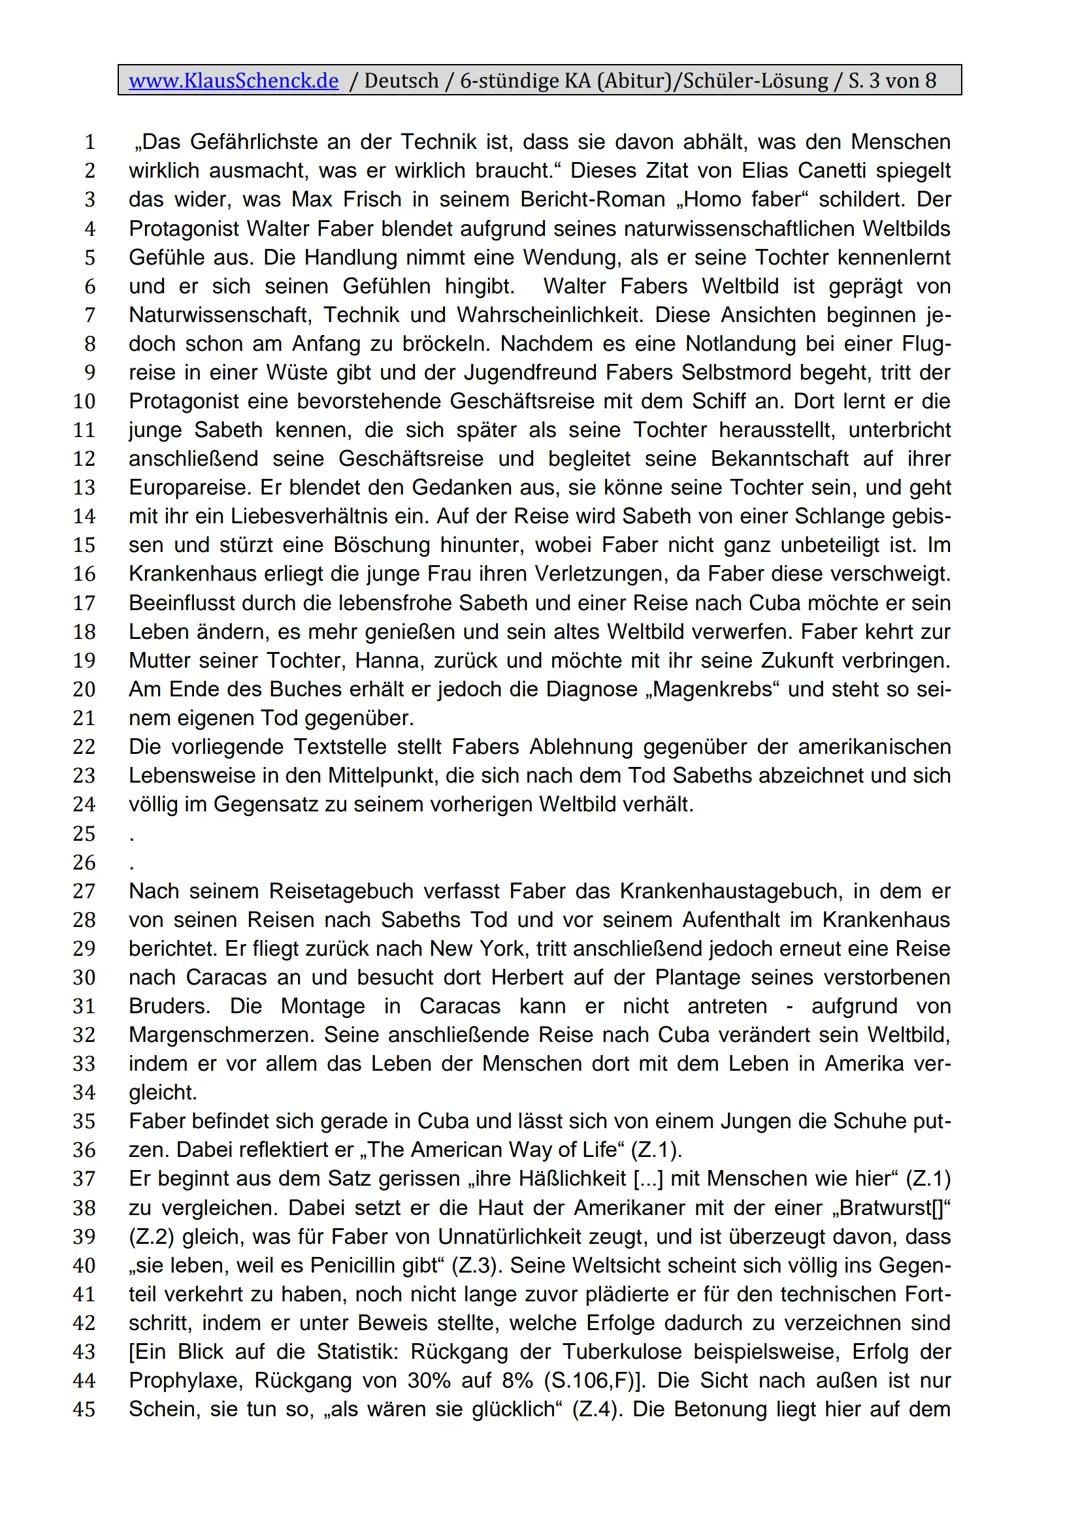 www.KlausSchenck.de / Deutsch / 6-stündige KA (Abitur)/Schüler-Lösung / S. 1 von 8
Klassenarbeitsaufbau
Einleitung
1. Zitat
2. Autor, Titel,